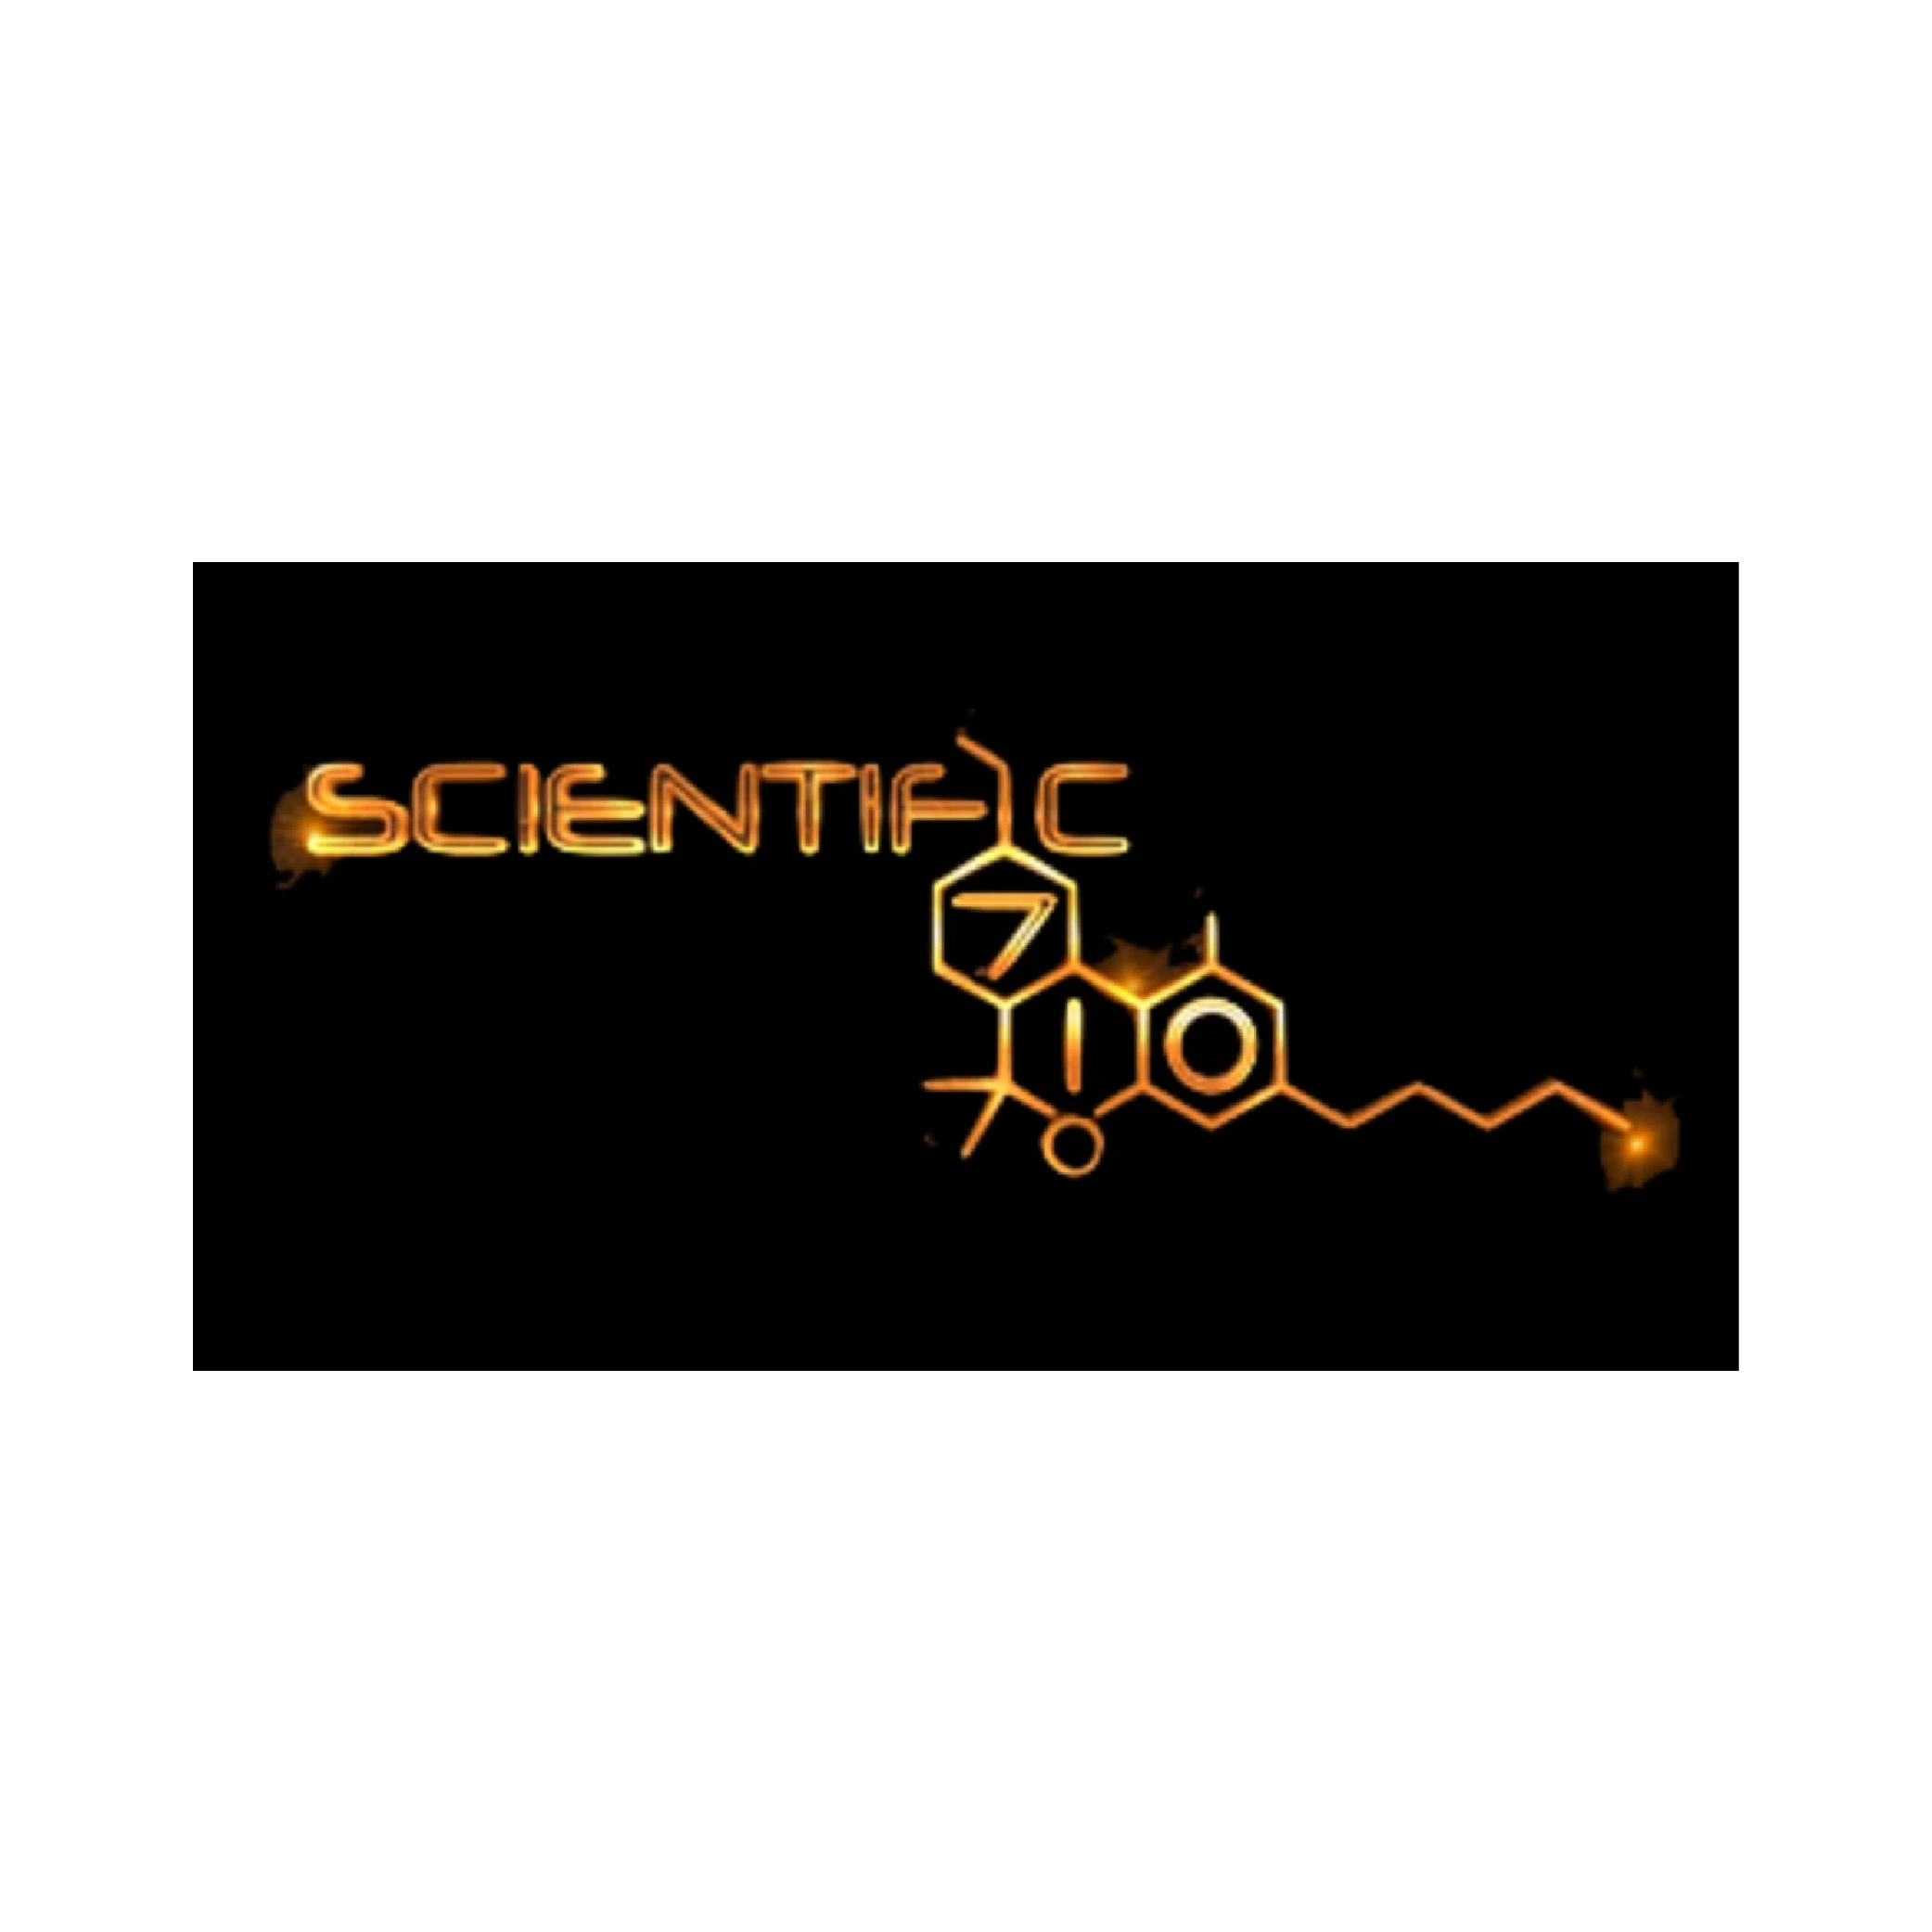 Scientific 710